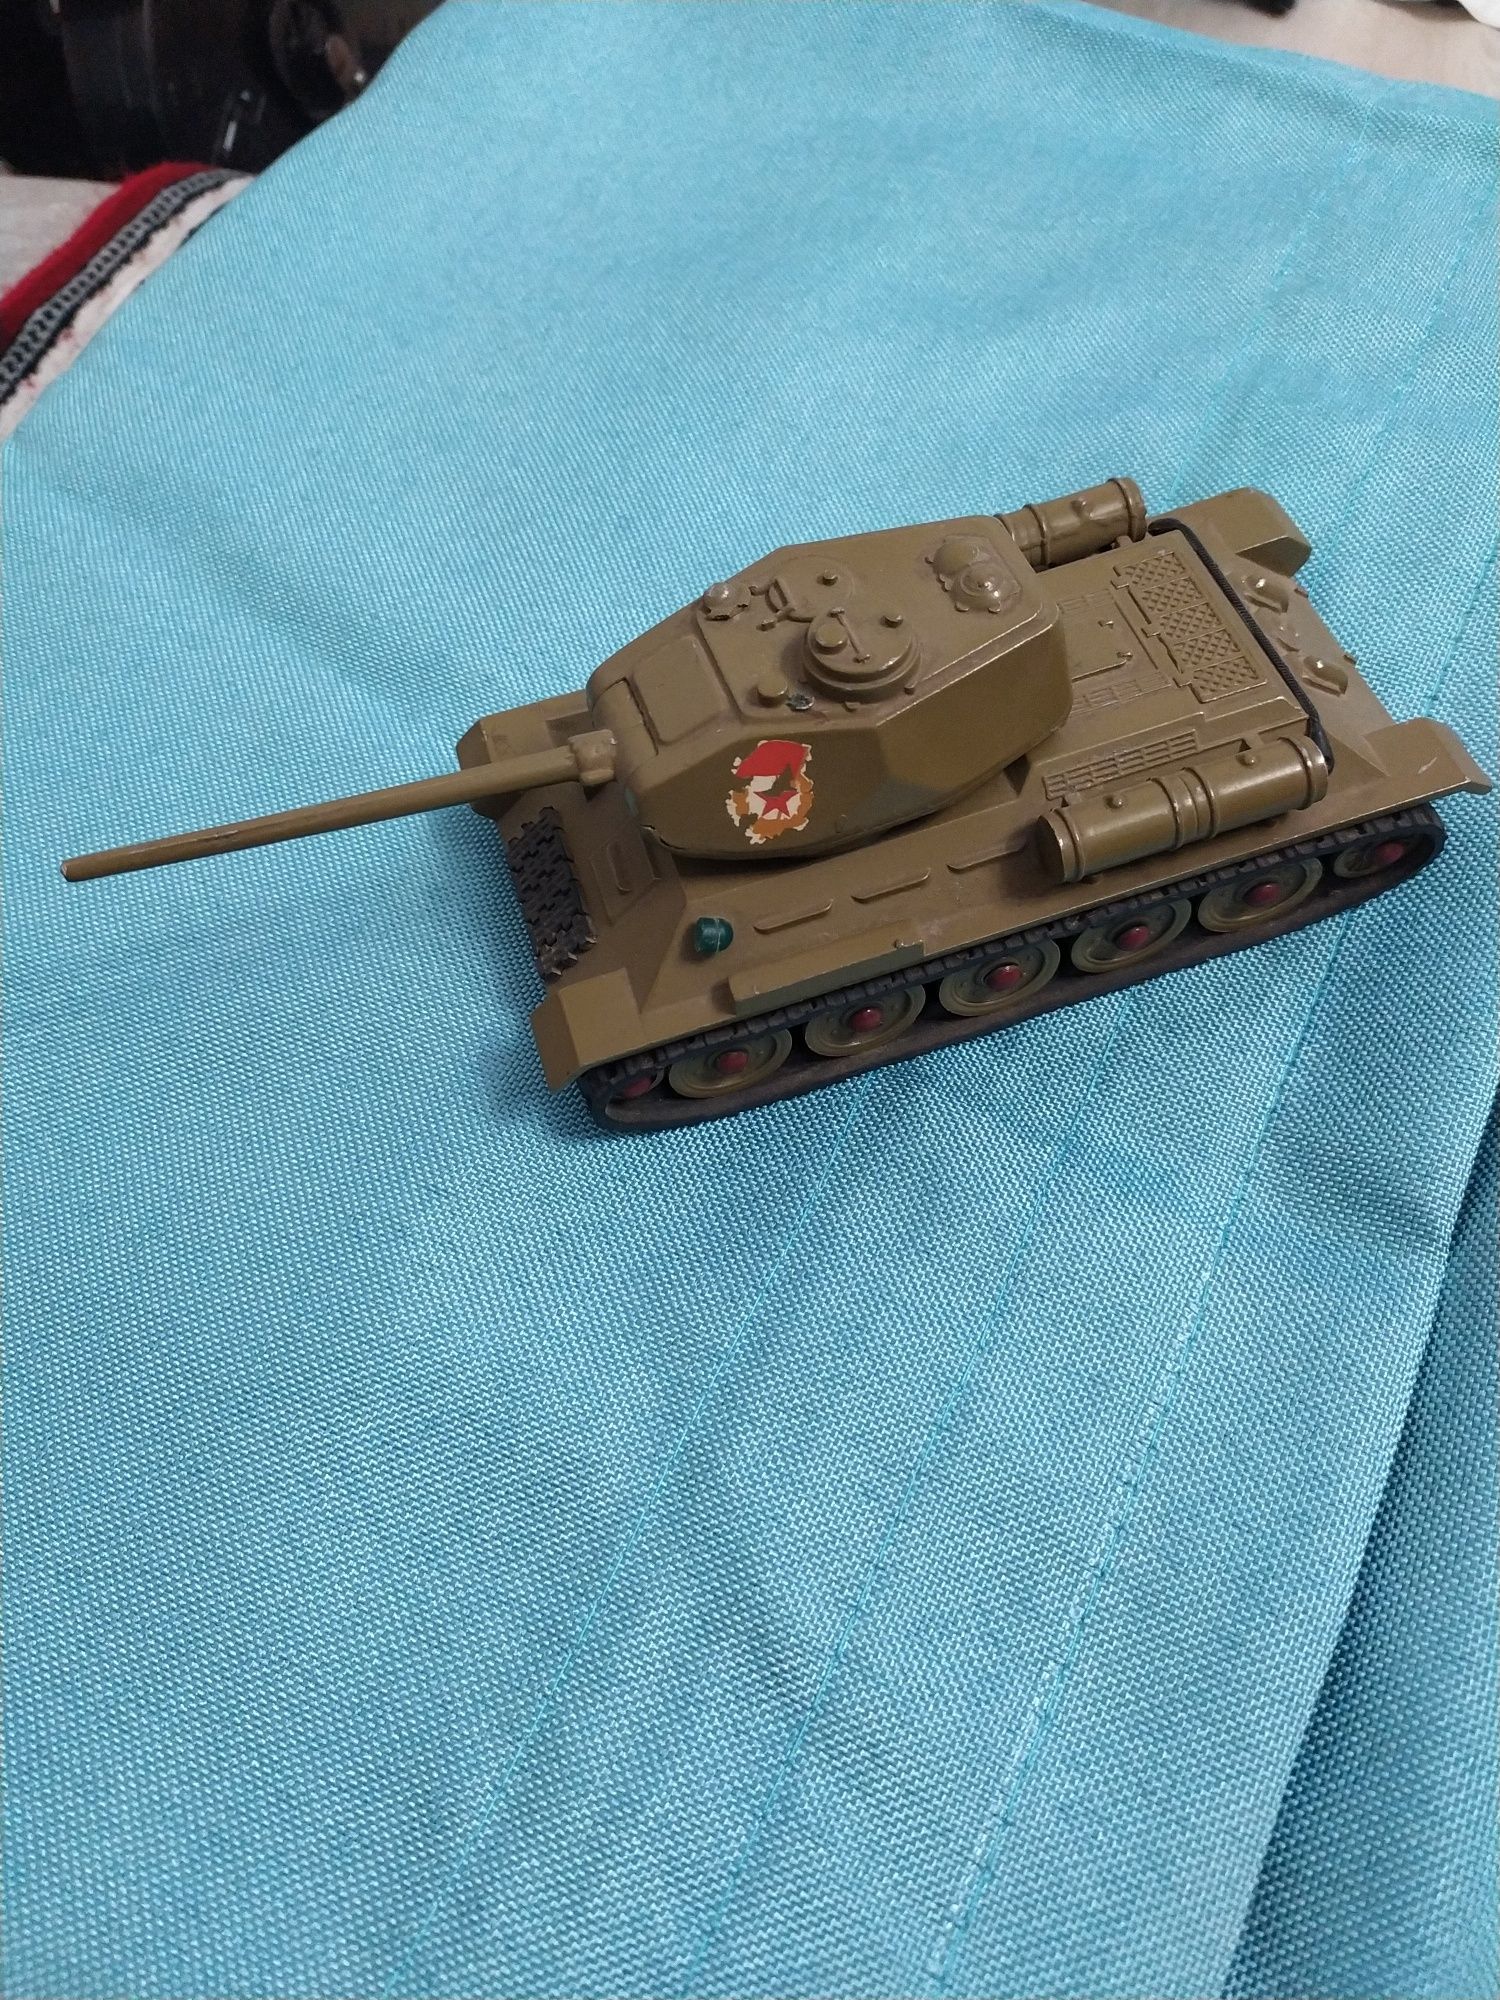 Модель танка Т-34 часів СРСР